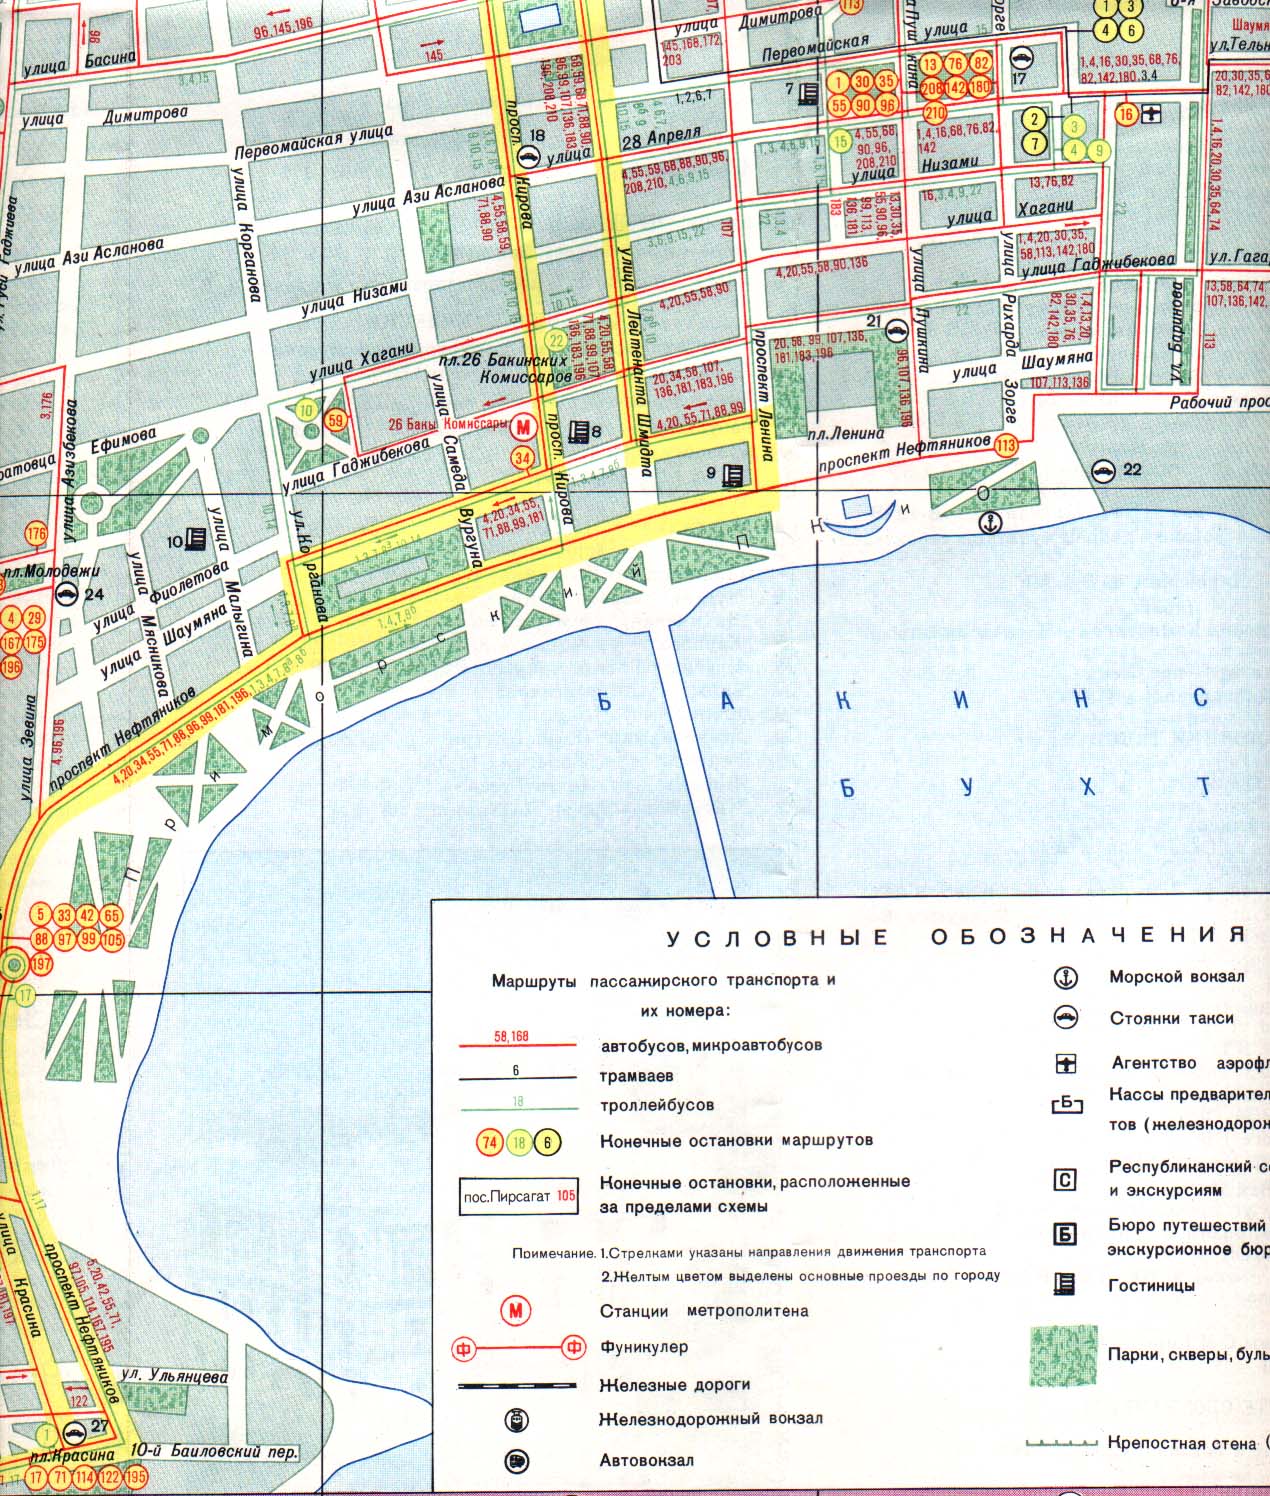 Map Of Baku